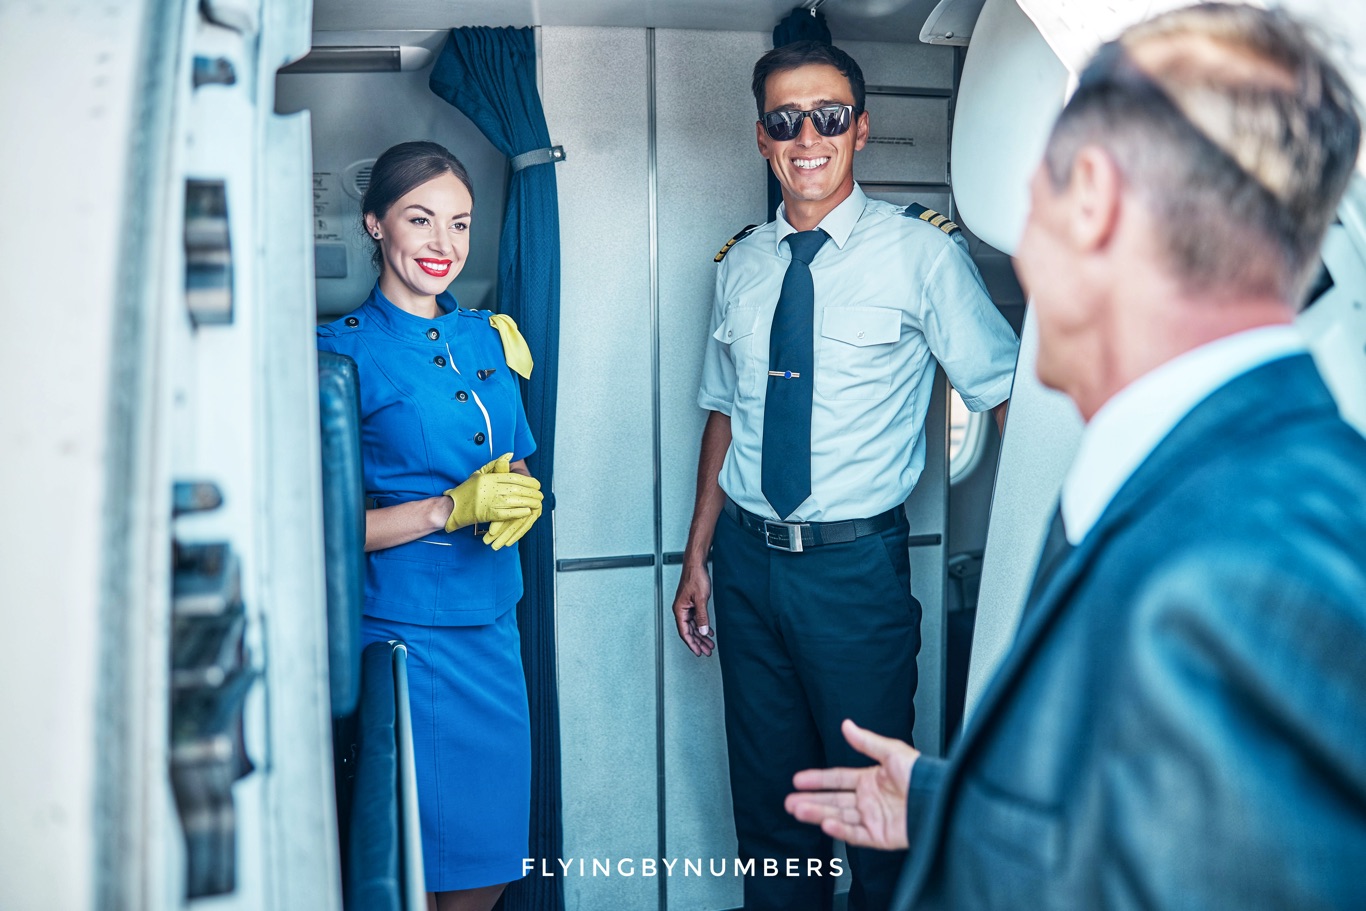 Flight attendant joke marriage proposal by passenger